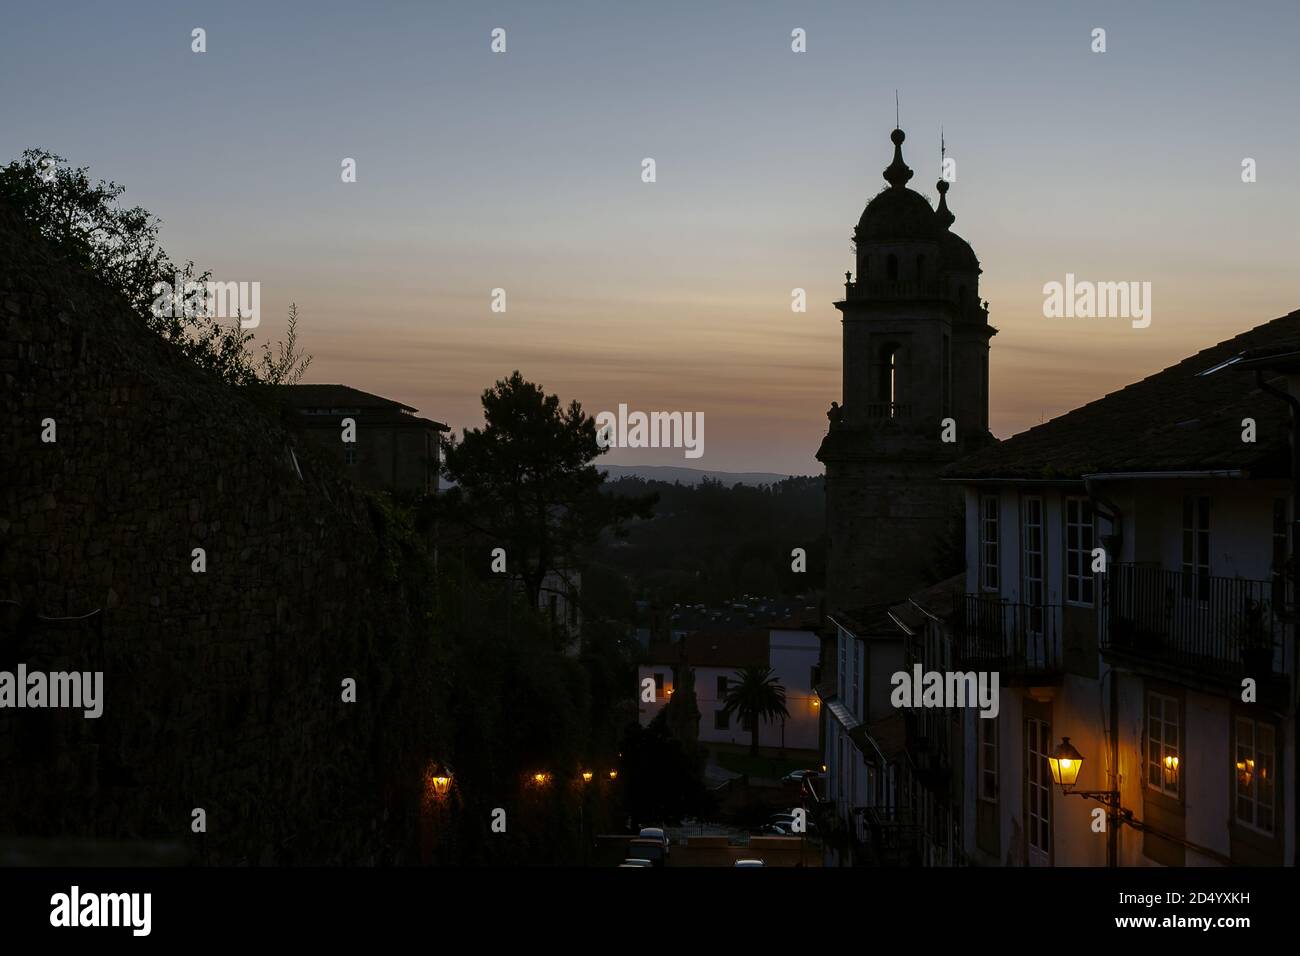 Santiago de Compostela, Galicia, Spanien - 09/27/2020: Convento de San Francisco bei Sonnenuntergang mit einer schwach sitzigen Straße & Stadthäusern davor. Sonnenuntergang in Spanien Stockfoto